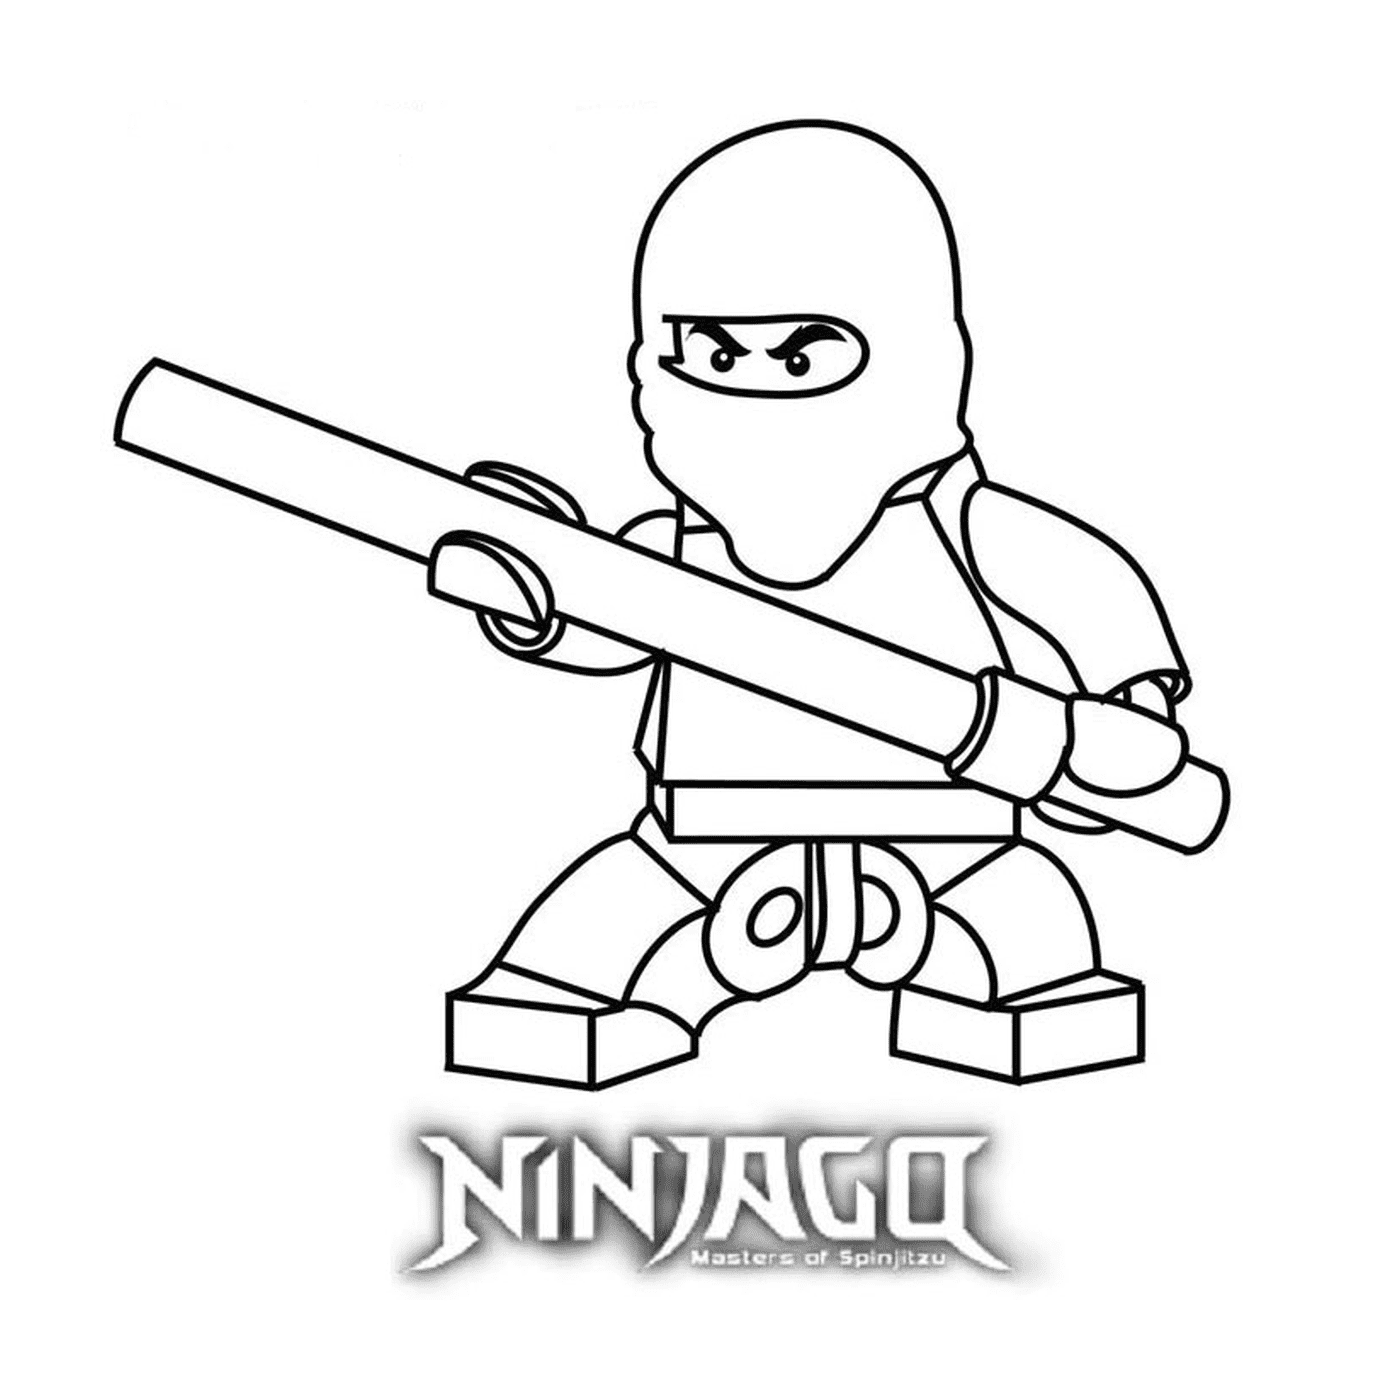  下载和打印 Lego Ninjago 